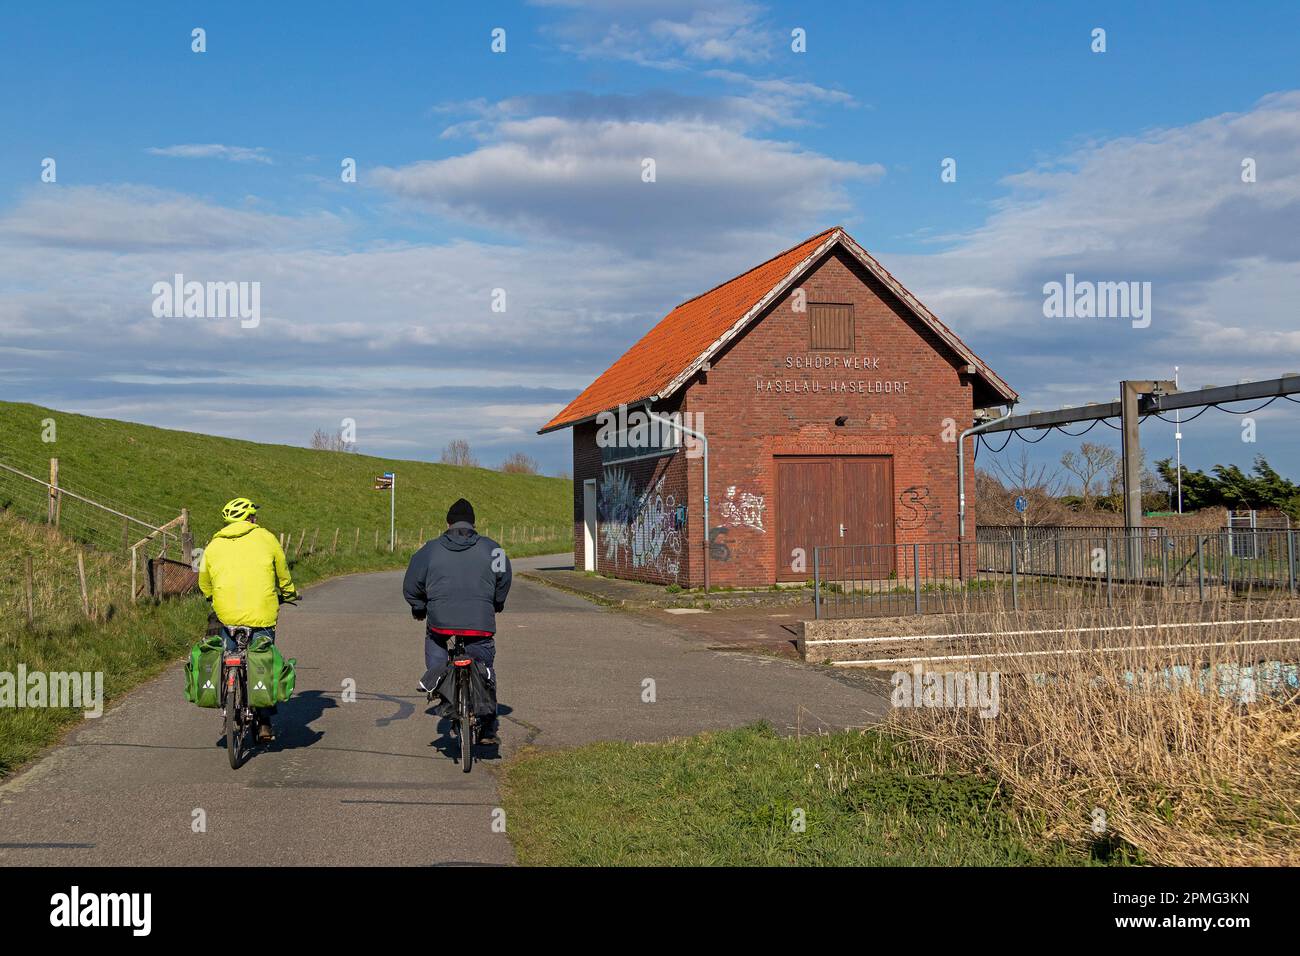 Pista ciclabile, ciclisti, stazione di pompaggio Haselau-Haseldorf, Haselau, Schleswig-Holstein, Germania Foto Stock